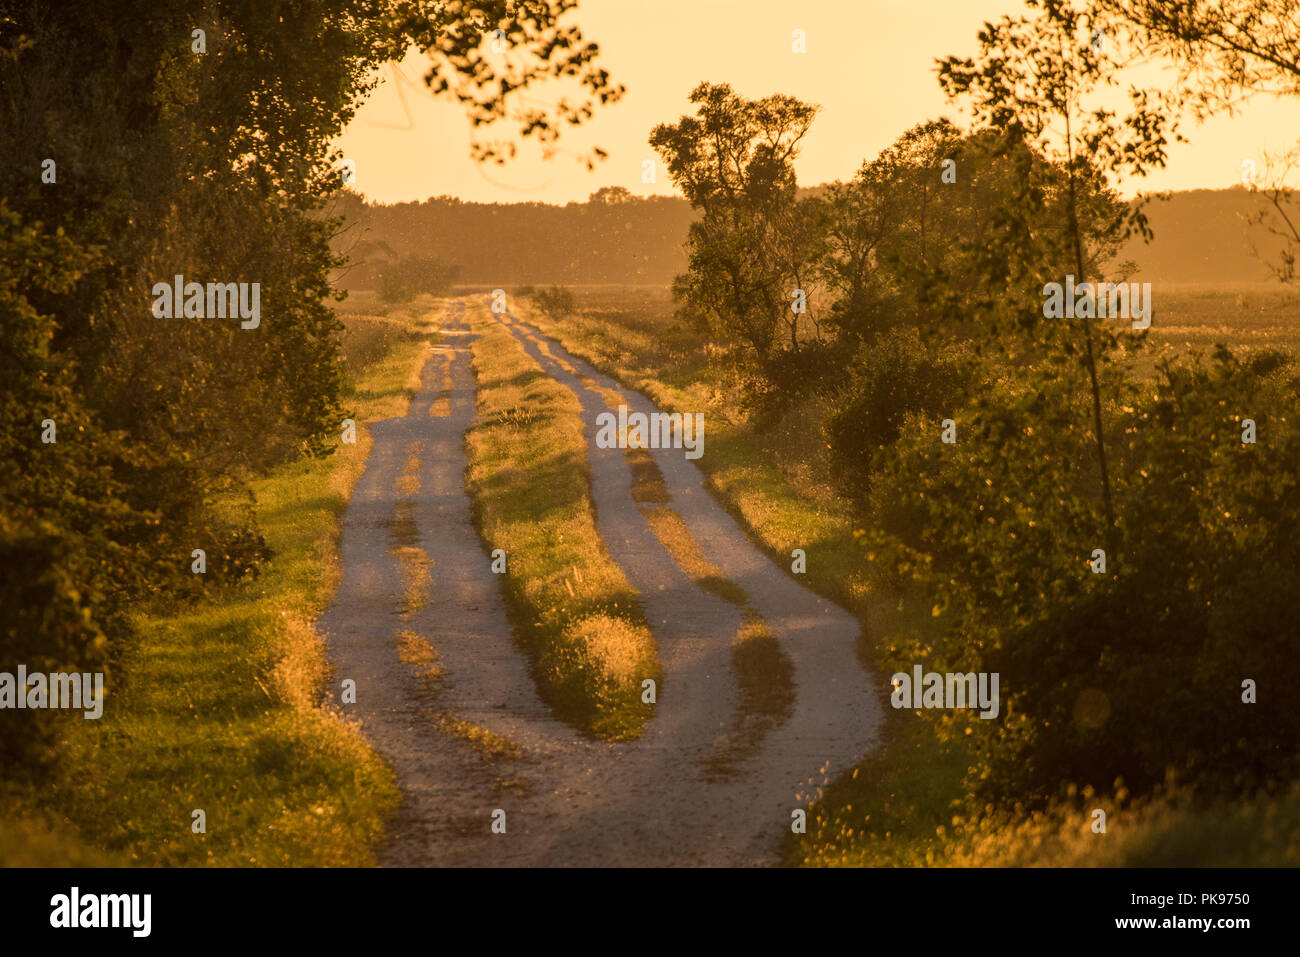 Estate vista della strada di un paese da una parte rurale del Wisconsin. Il sole tramonta la balneazione tutto in una luce dorata. Foto Stock